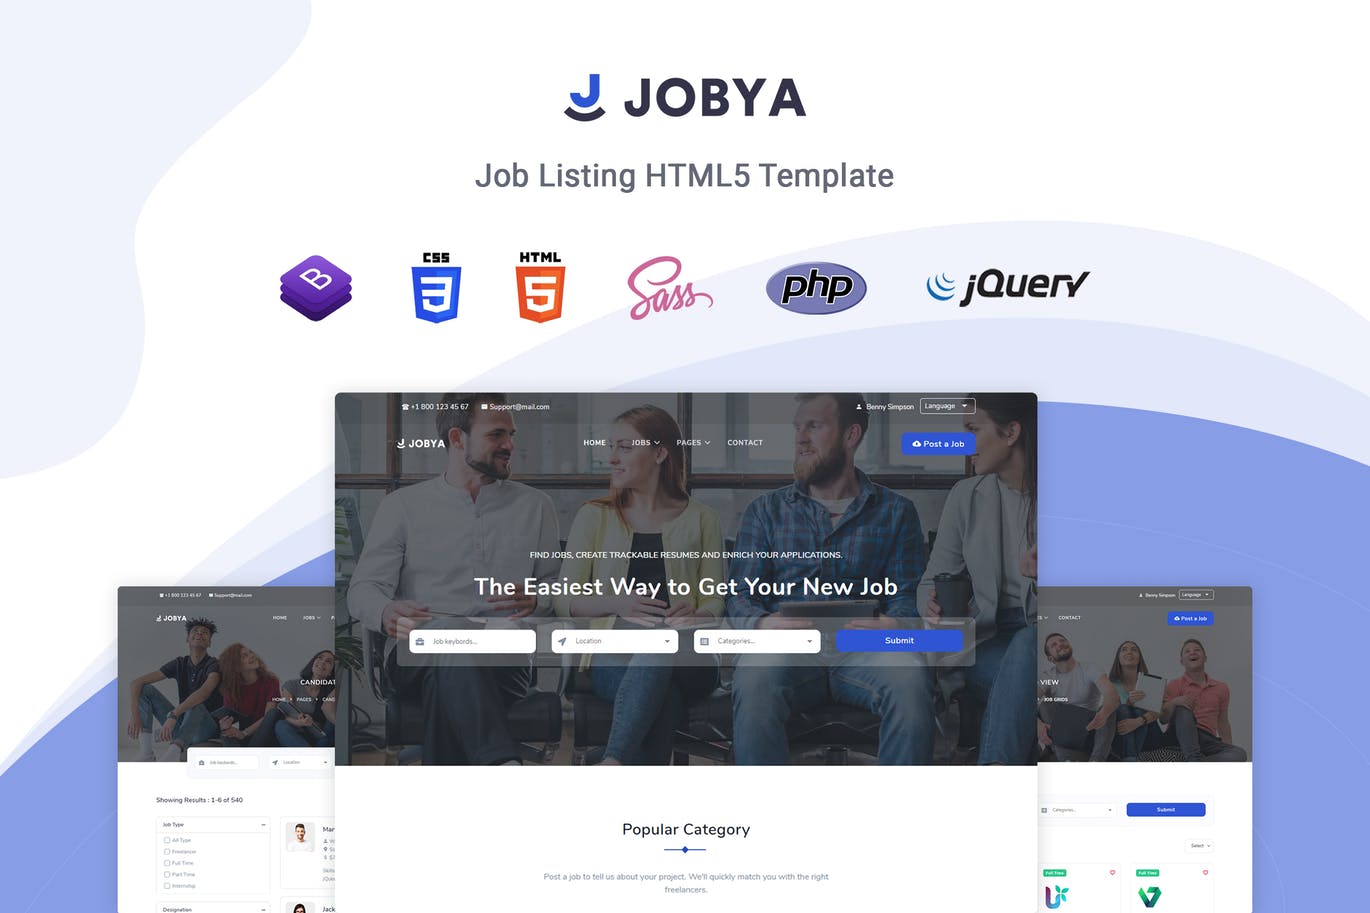 招聘网站/猎头网站设计HTML5模板非凡图库精选 Jobya – Job Listing HTML5 Template插图